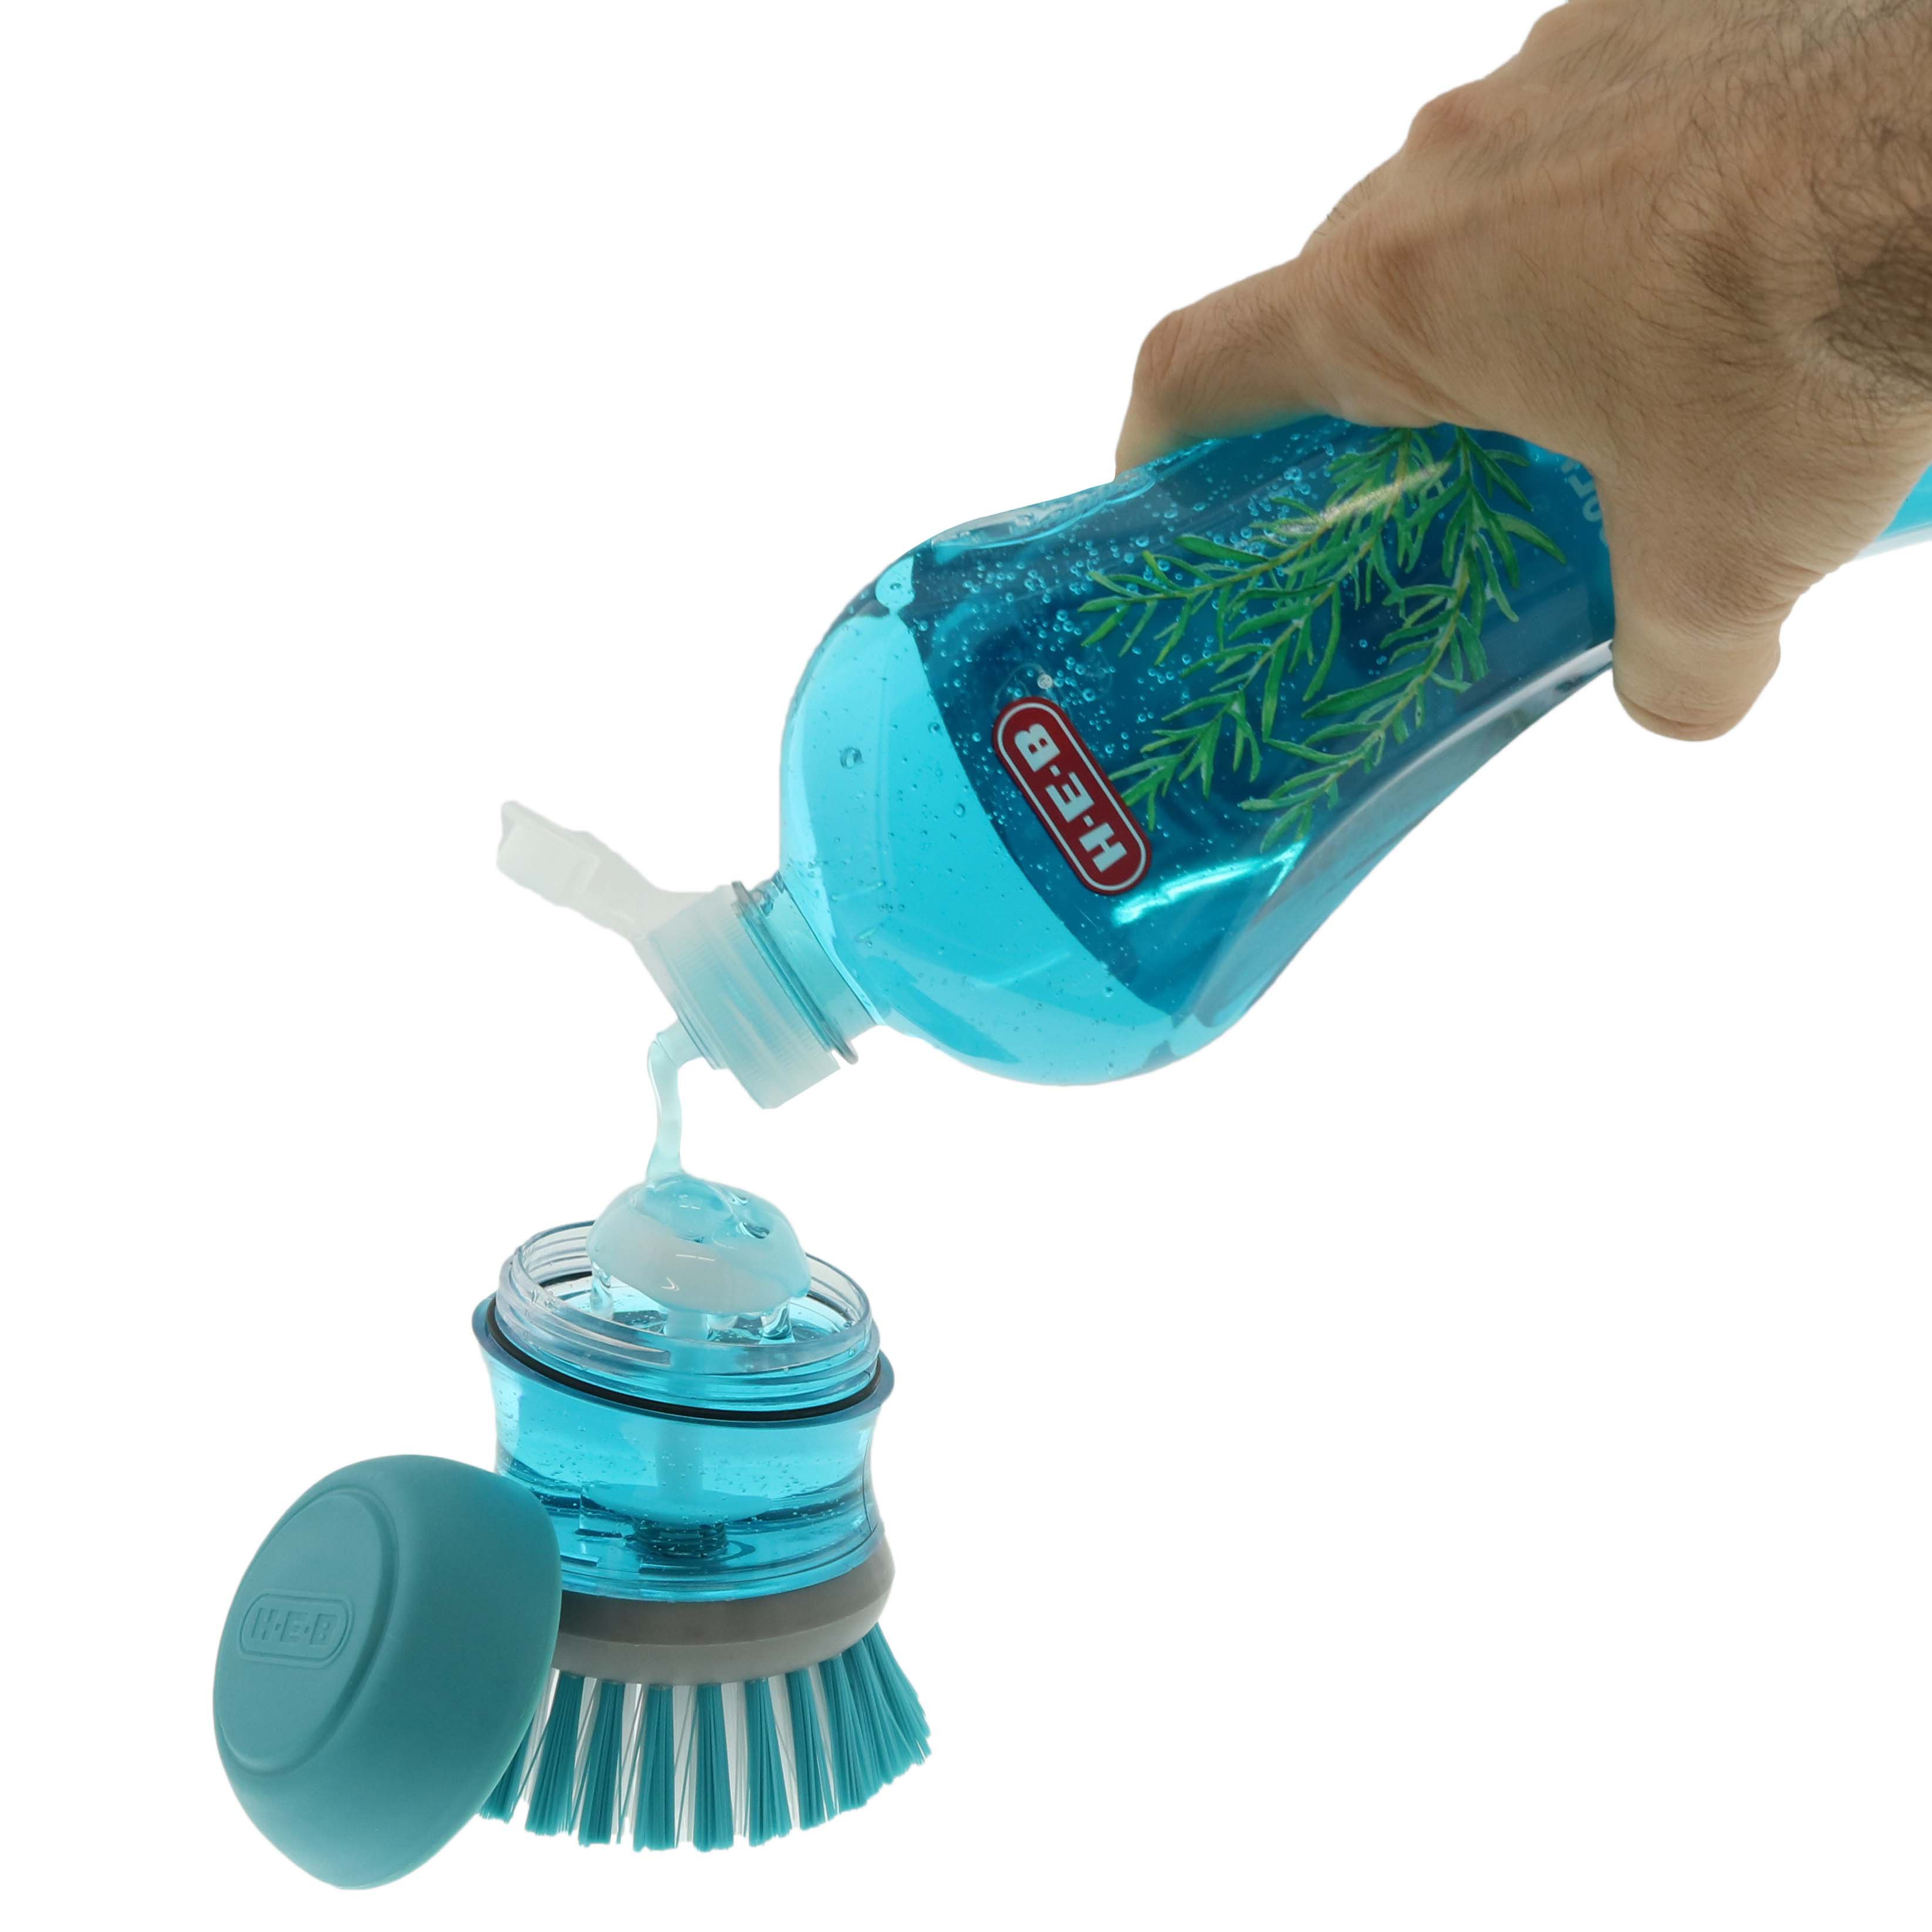 H-E-B Mini Scrub Brush with Scraper - Shop Brushes at H-E-B